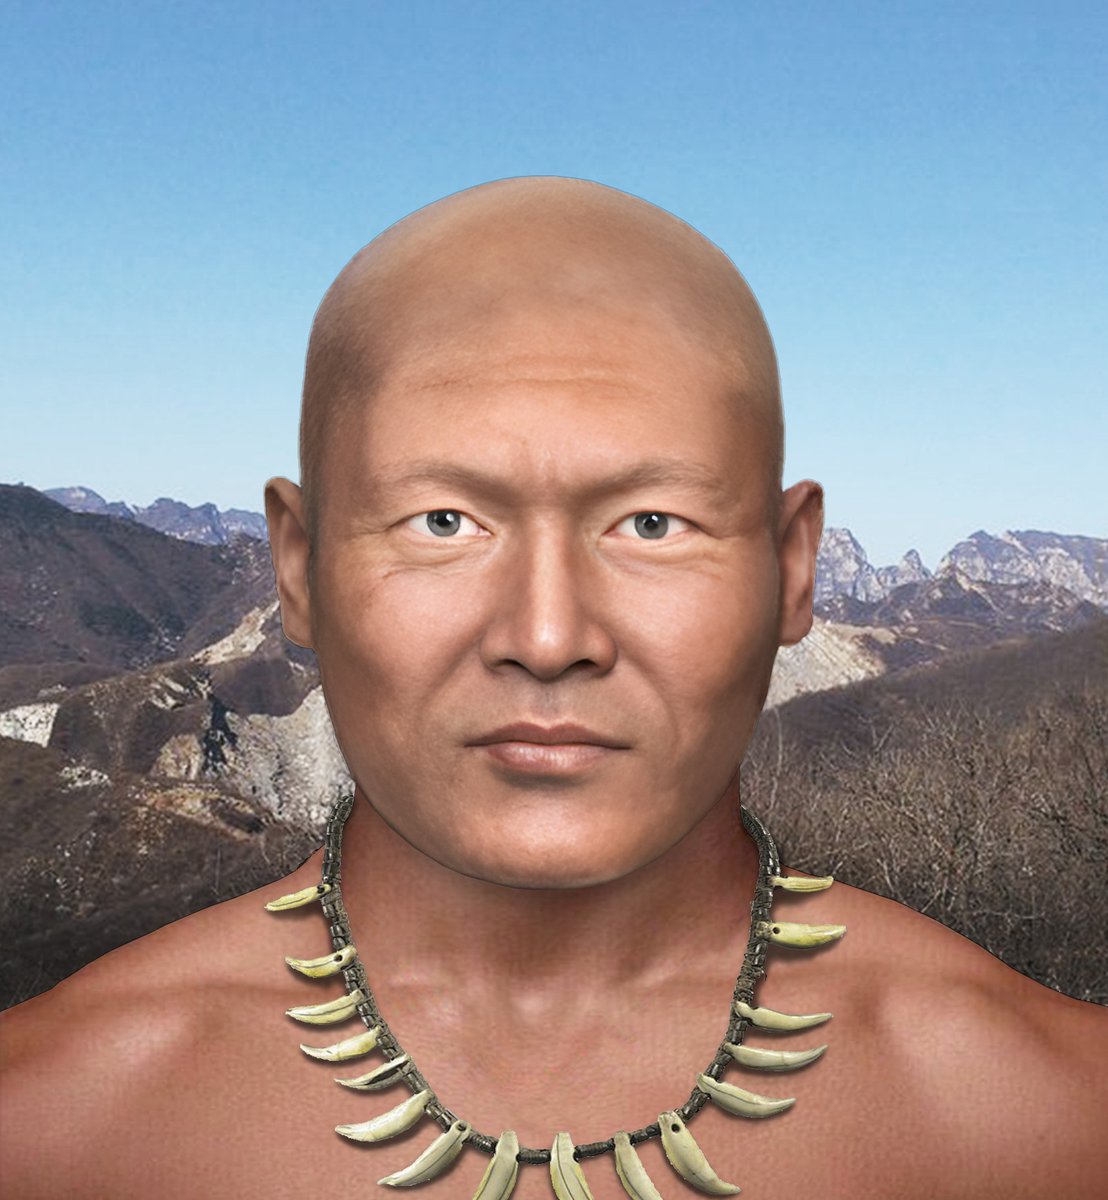 山顶洞人的颅面还原/原始蒙古人种 Facial reconstruction of the Shandingdong(Upper Cave) man, specimen from Upper Cave in Longgu Mountain, Zhoukoudian, Beijing, belongs to the 'proto-Mongoloid', living in the Late Paleolithic, about 27-34,000 years ago/Late Pleistocene,